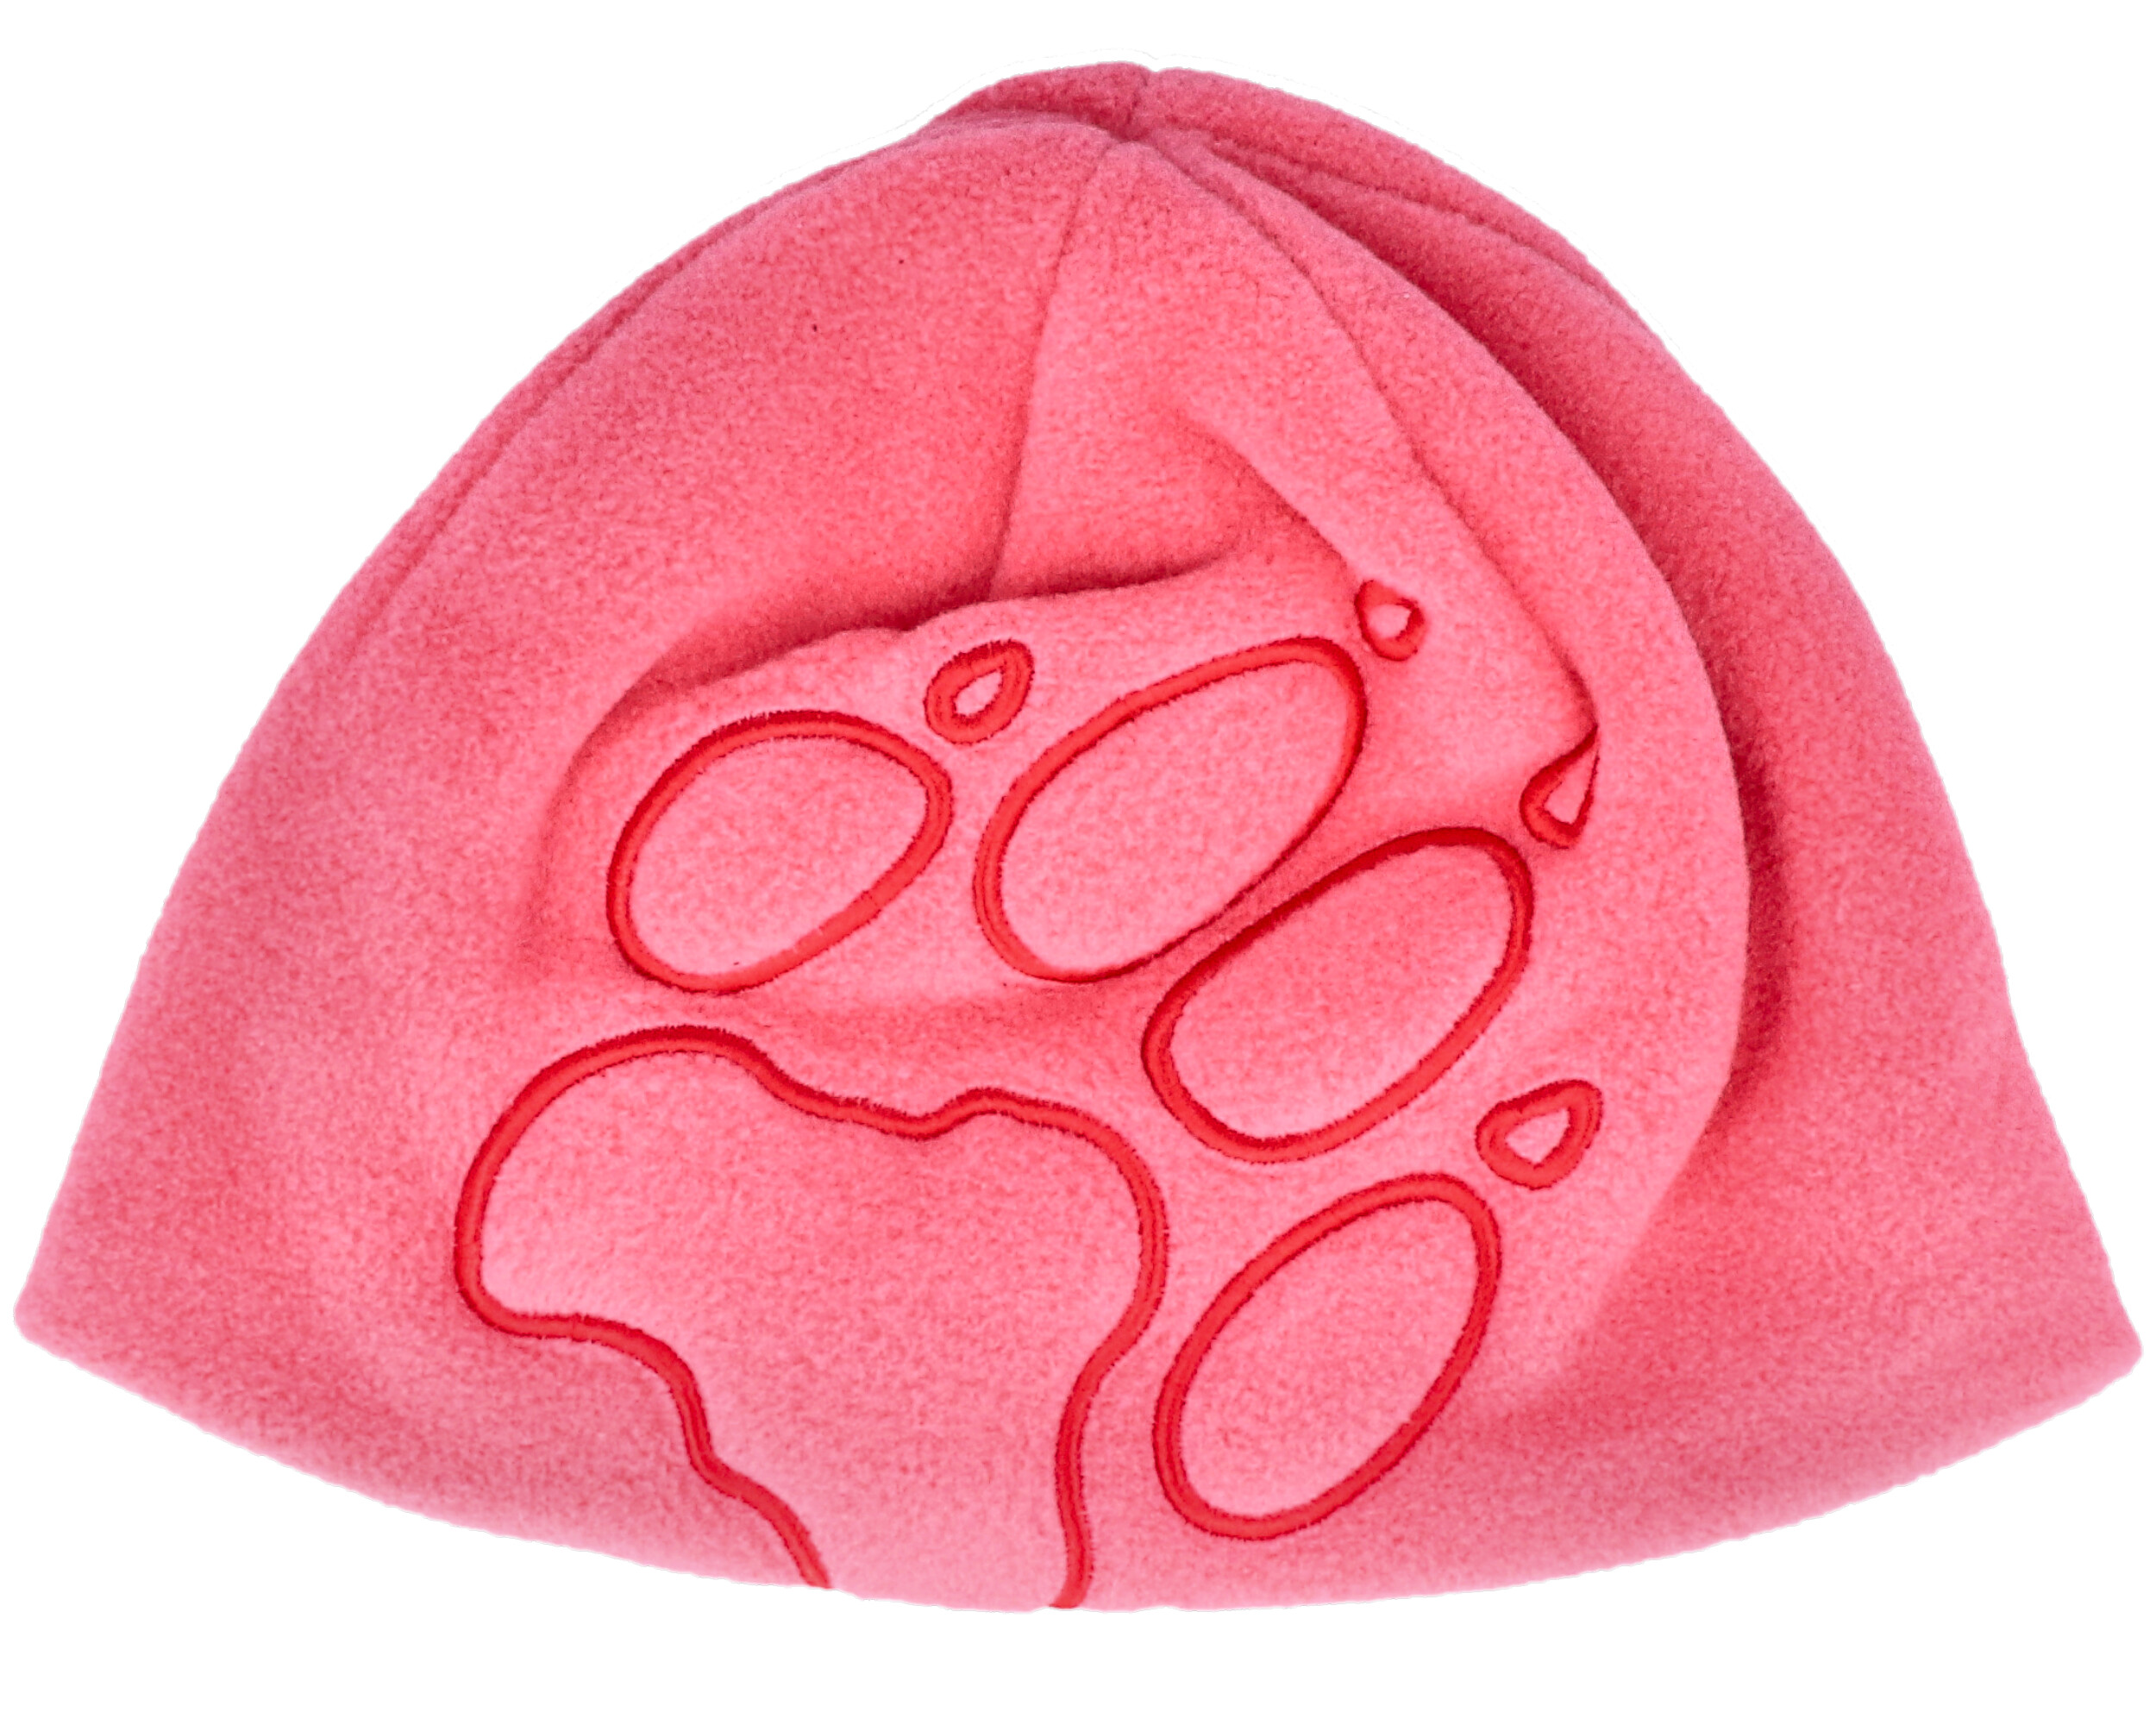 Kids Front Paw Hat Coral Pink Beanie - Jack Wolfskin beanie